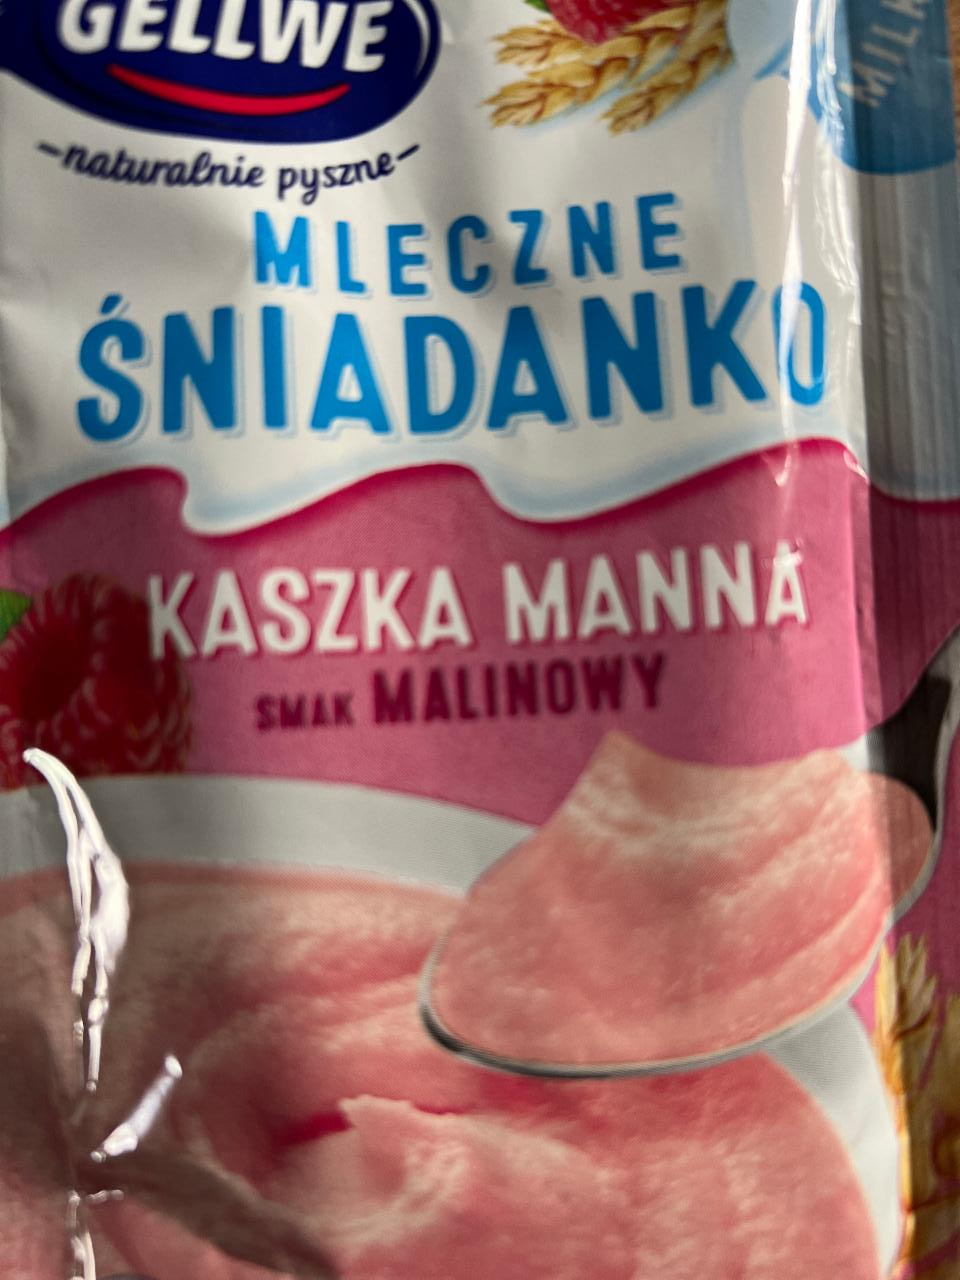 Fotografie - Mleczne śniadanko Kaszka manna smak malinowy Gellwe